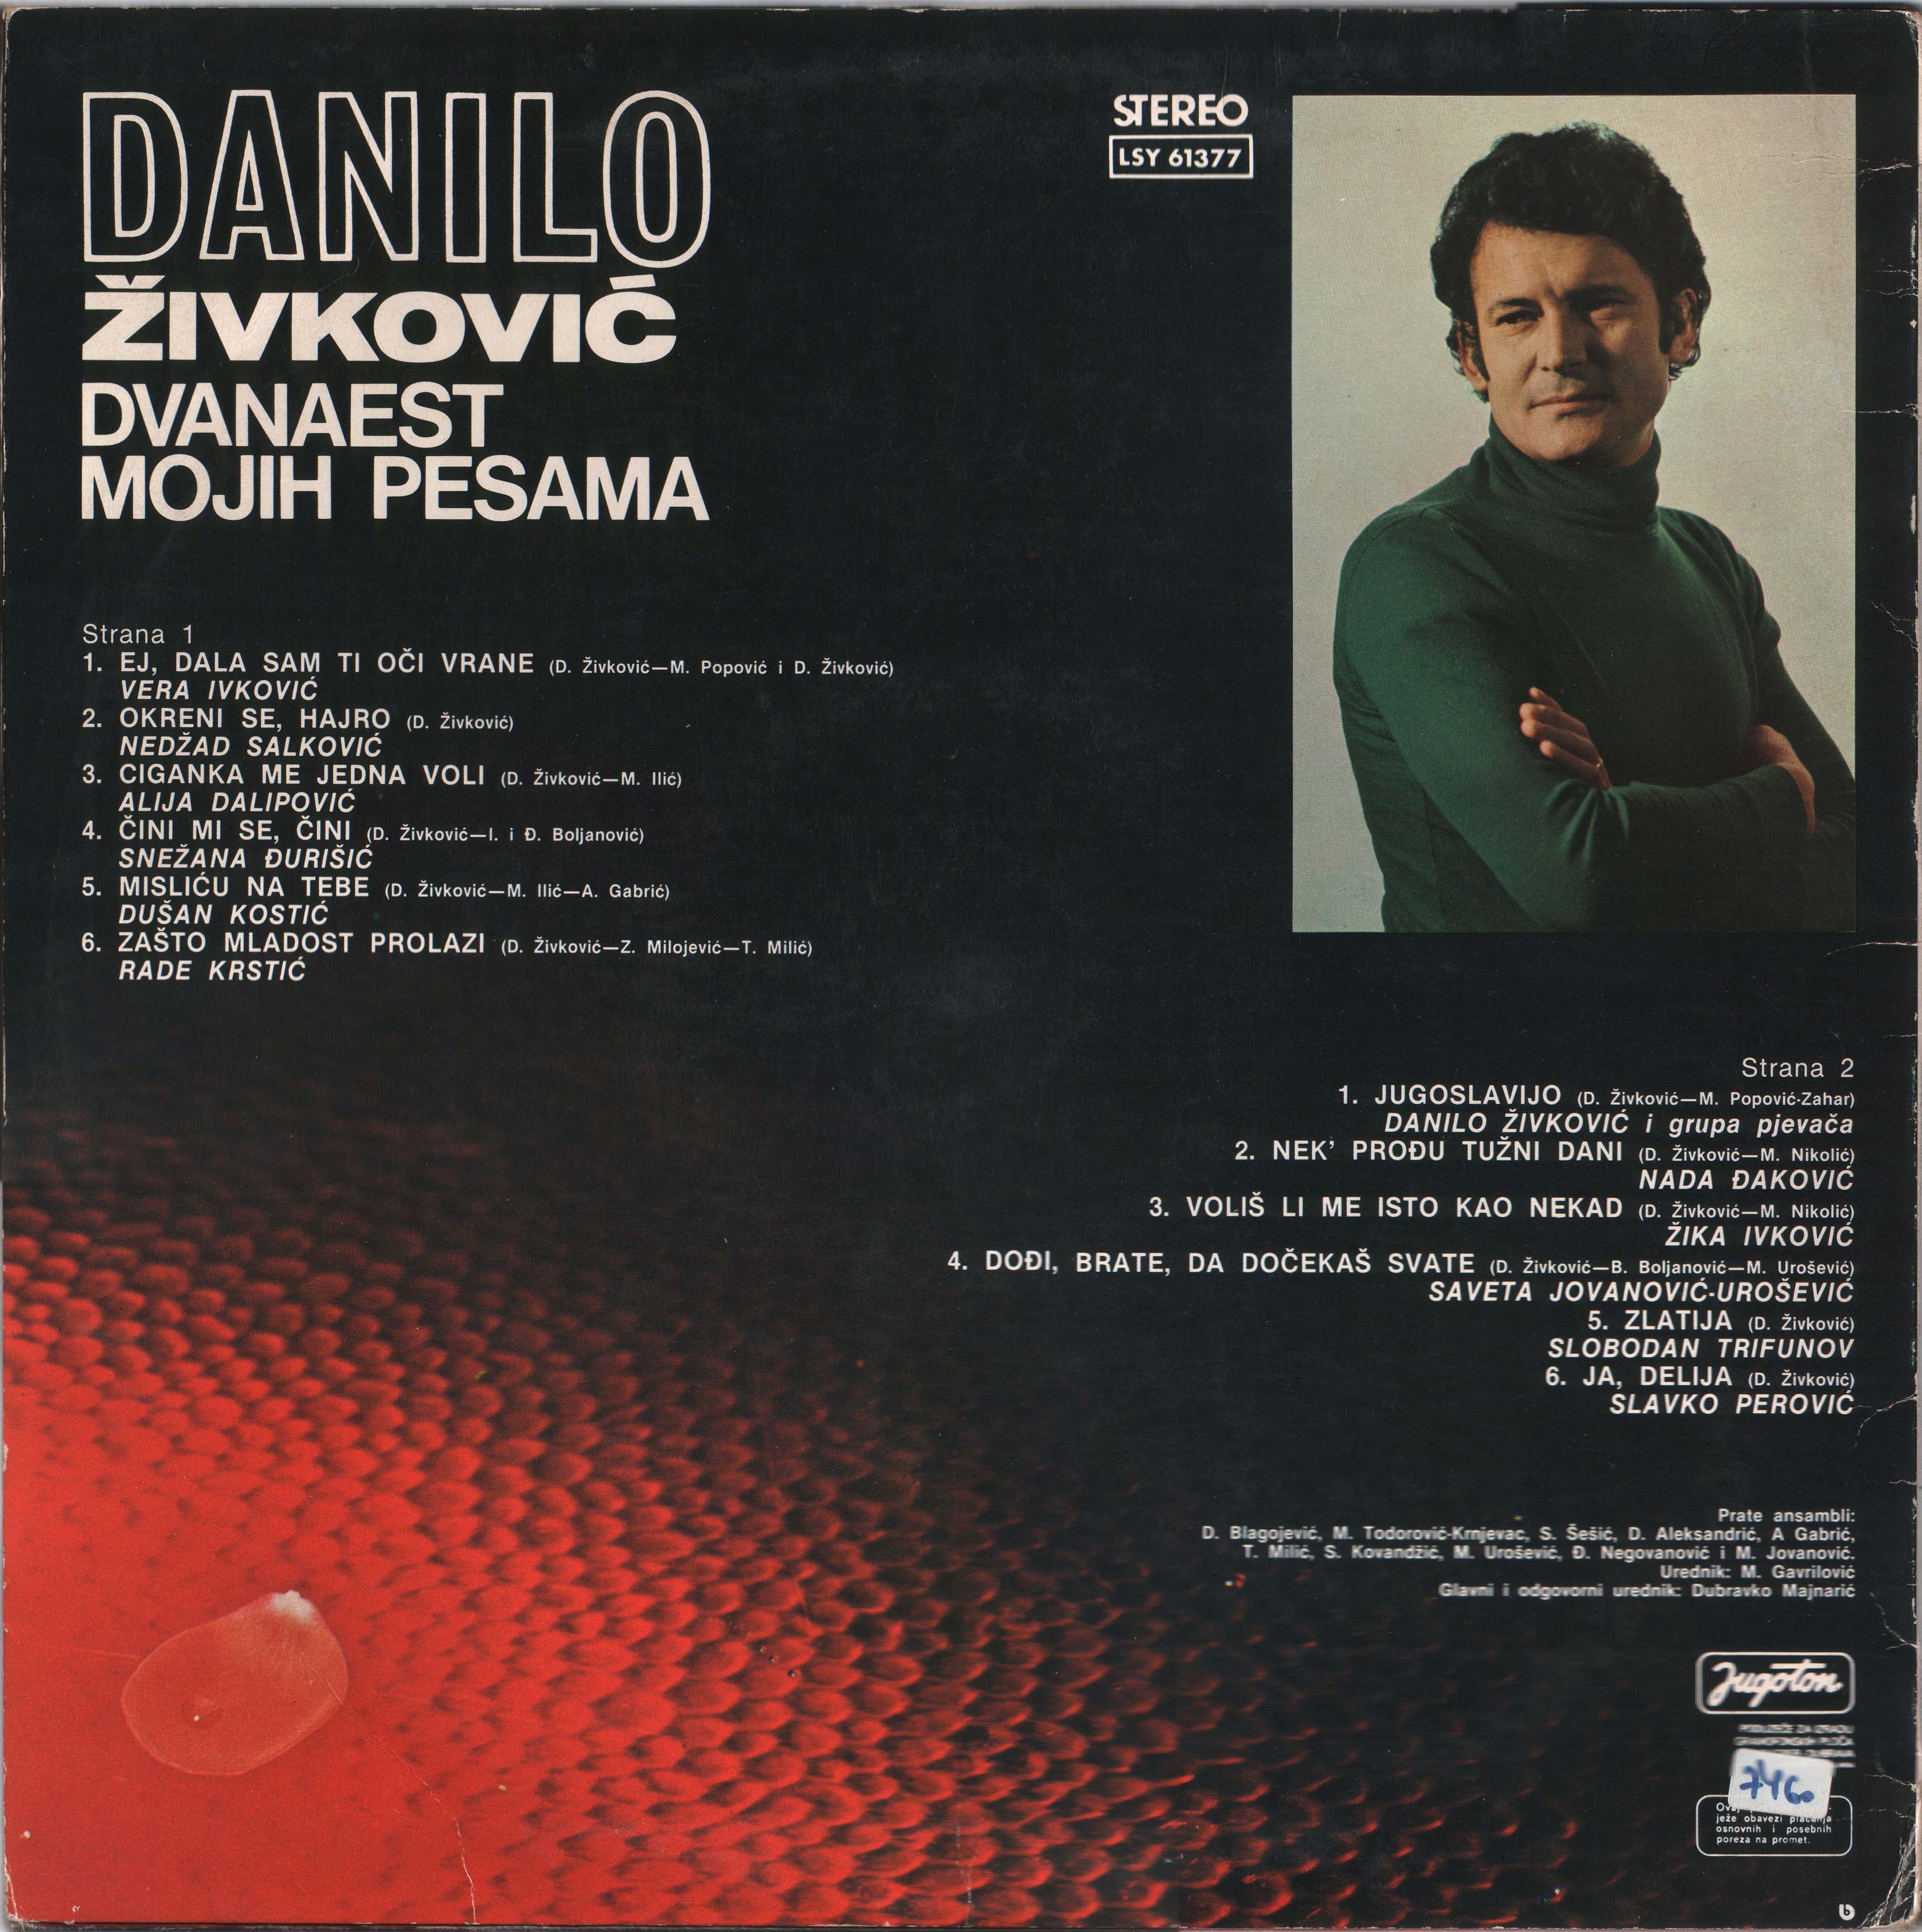 Danilo Zivkovic 1979 Z